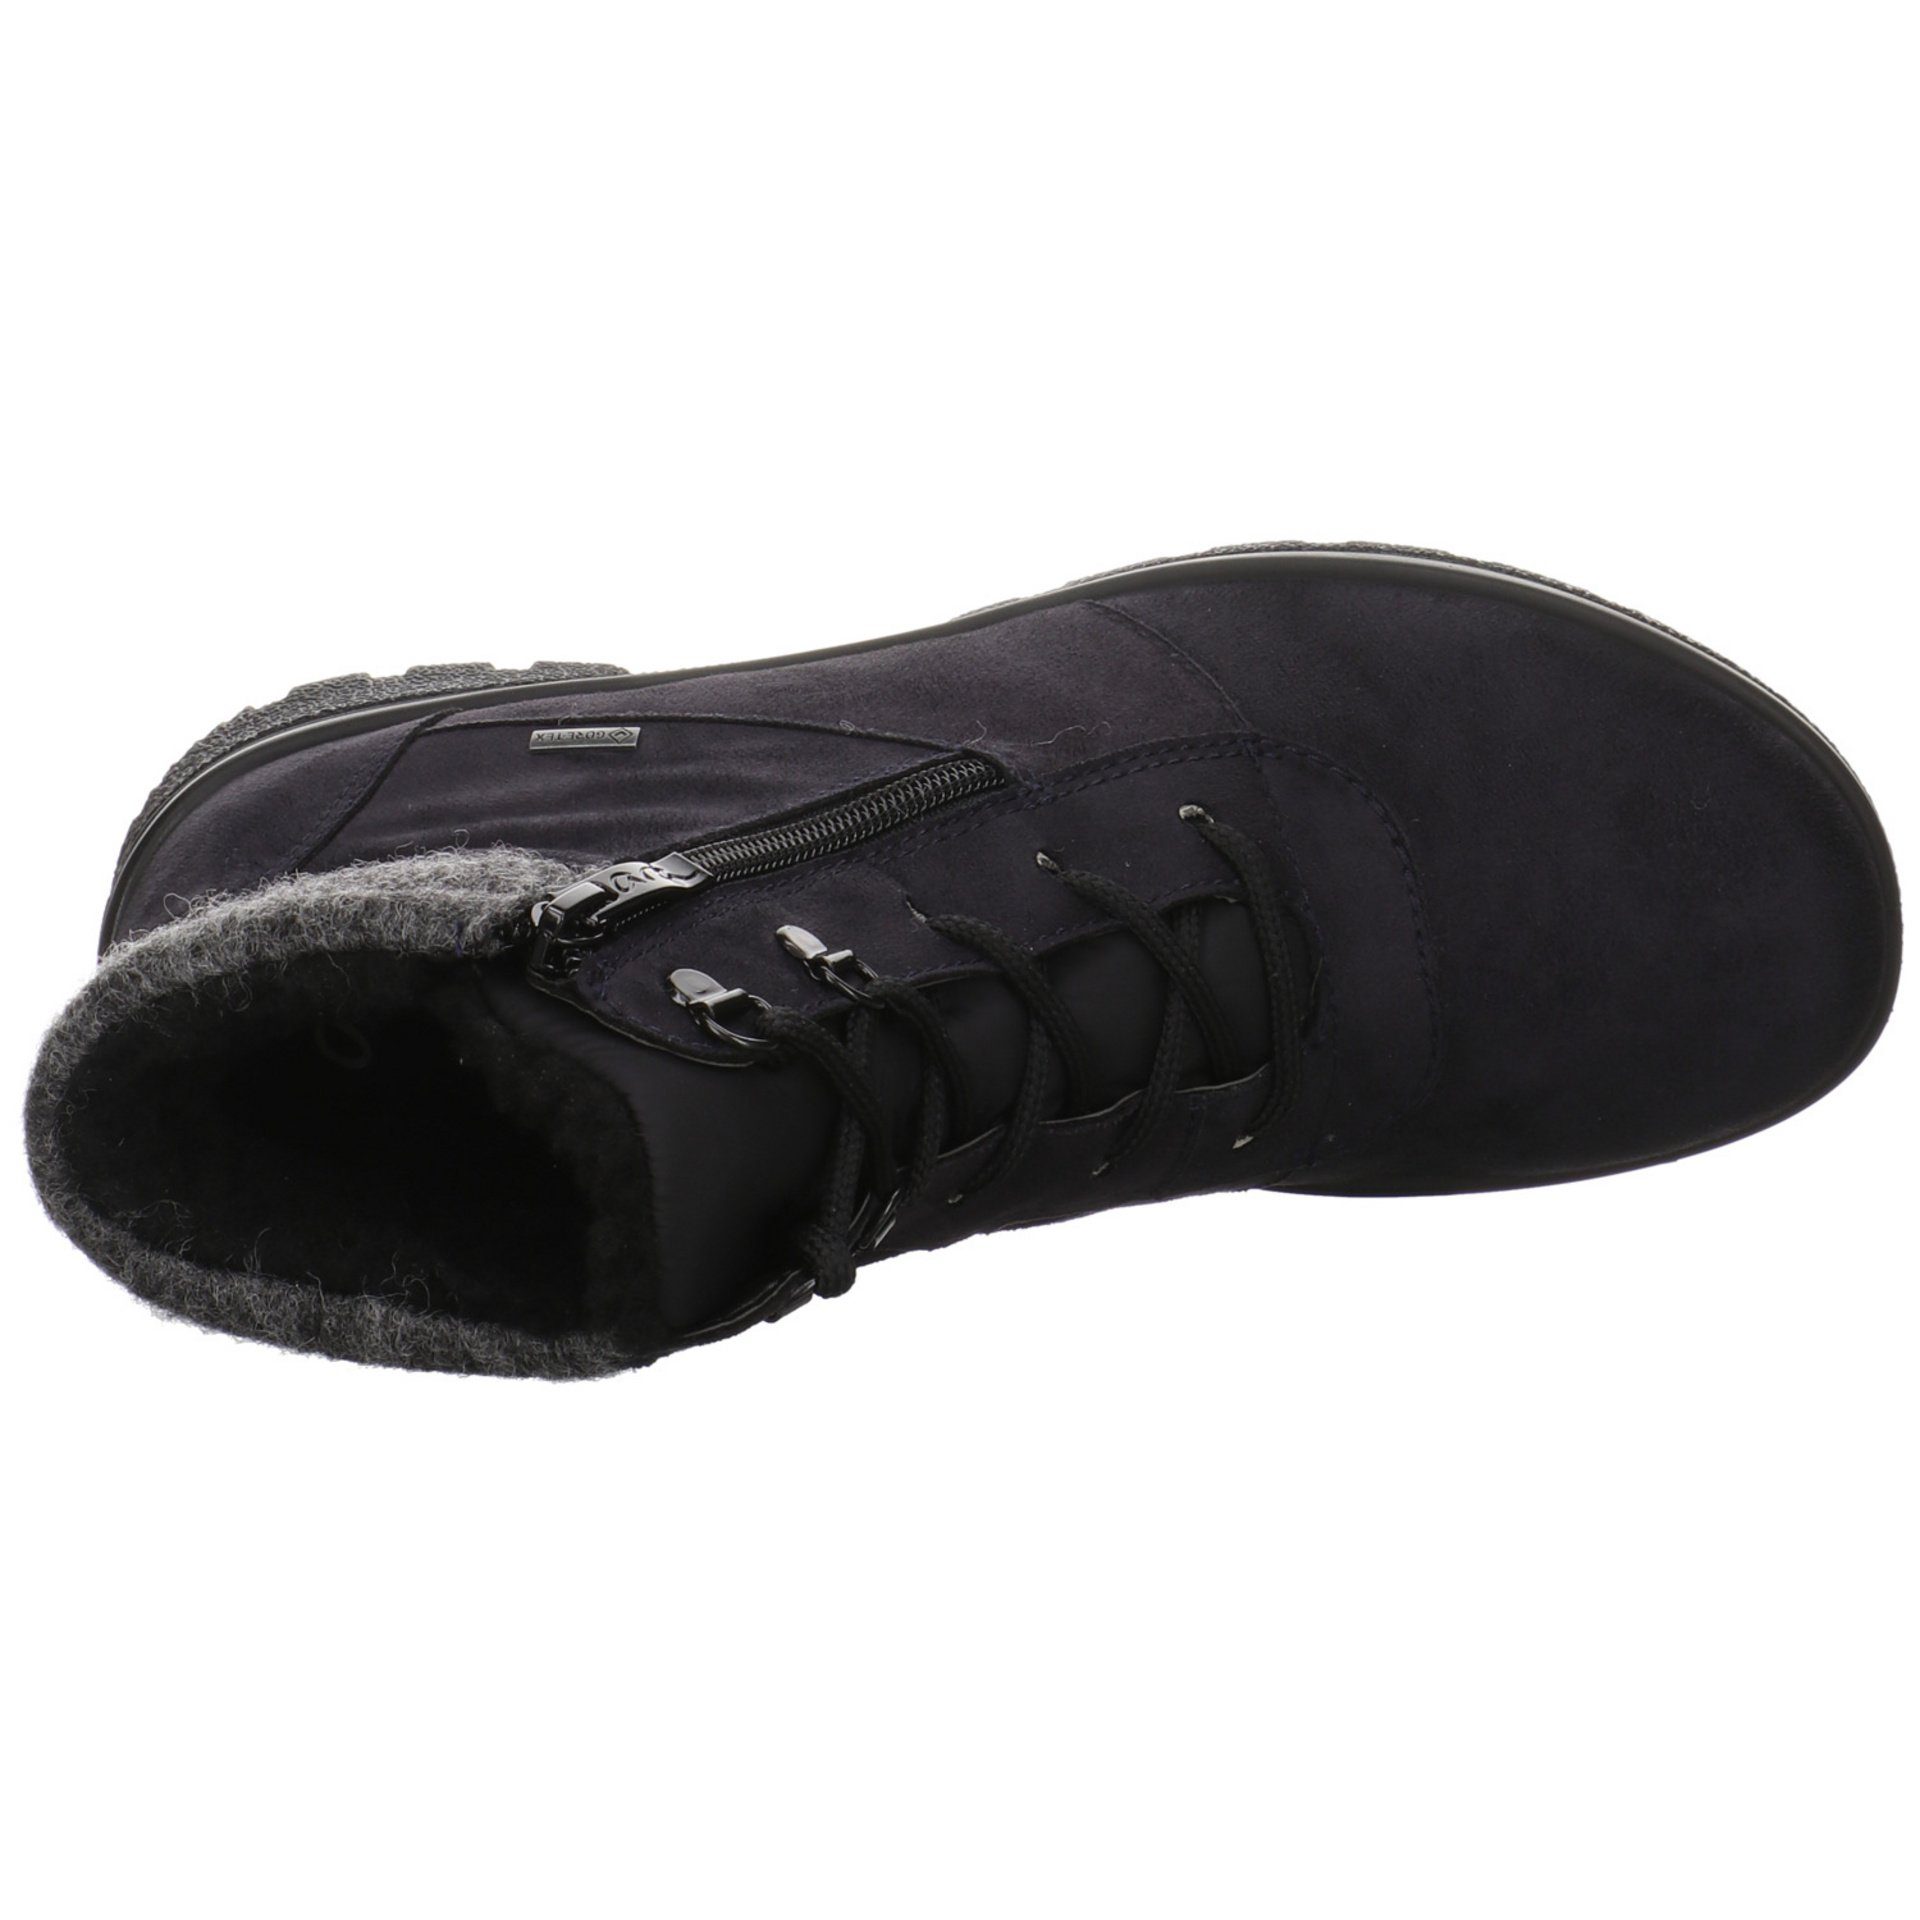 Ara Damen Snowboots Schuhe Saas-Fee Boots Snowboots blau/grau/schwarz Leder-/Textilkombination